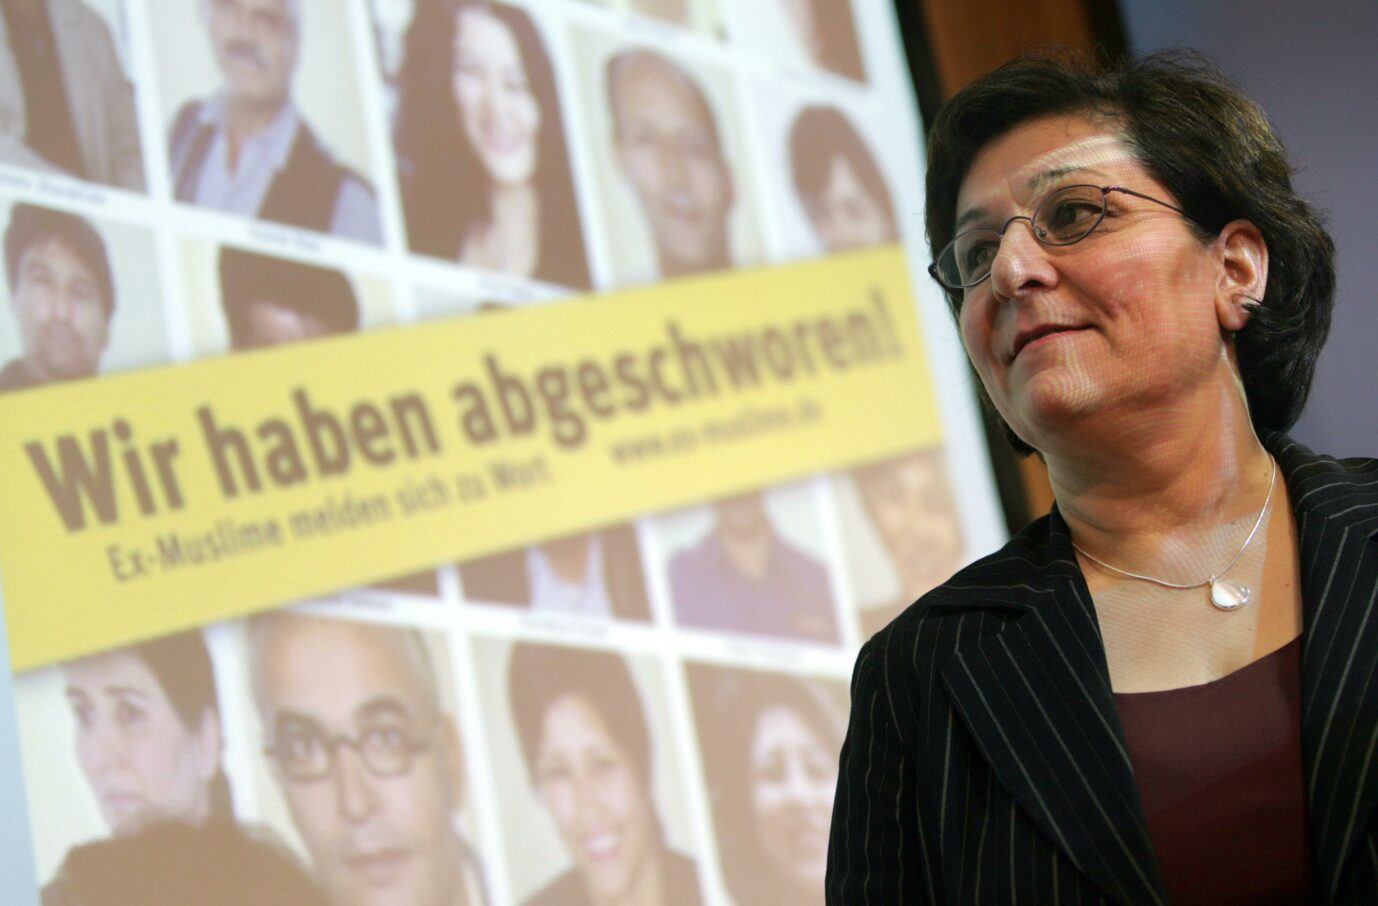 Die Islam-Kritikerin Mina Ahadi vor einer Pressekonferenz unter dem Titel "Wir haben abgeschworen" Foto: picture-alliance/ dpa | Rainer Jensen